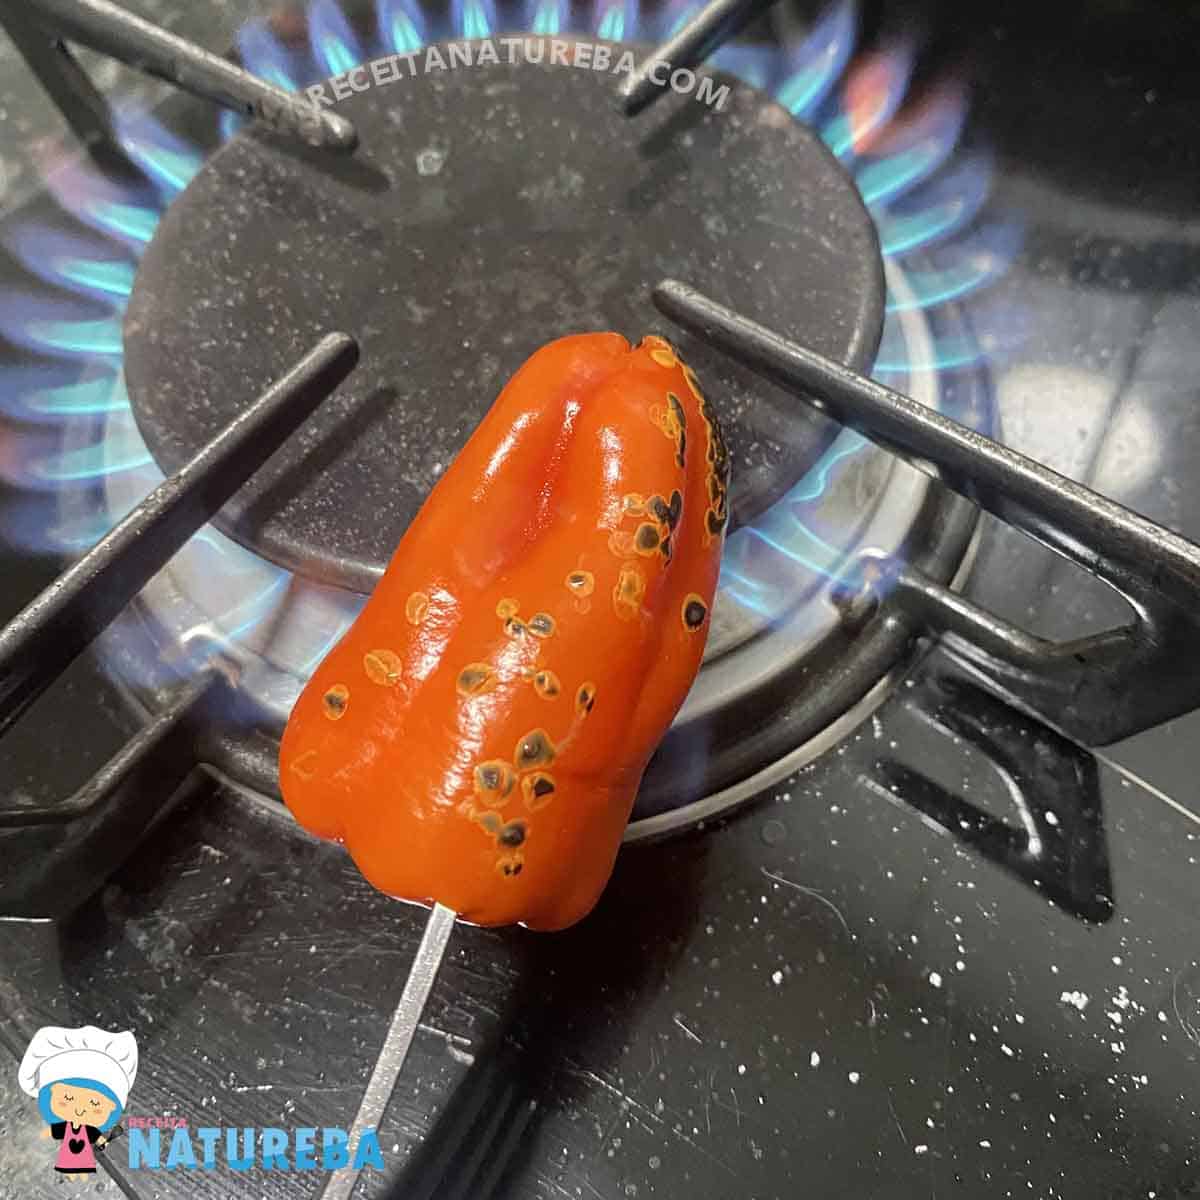 tostando o pimentao na chama do fogao